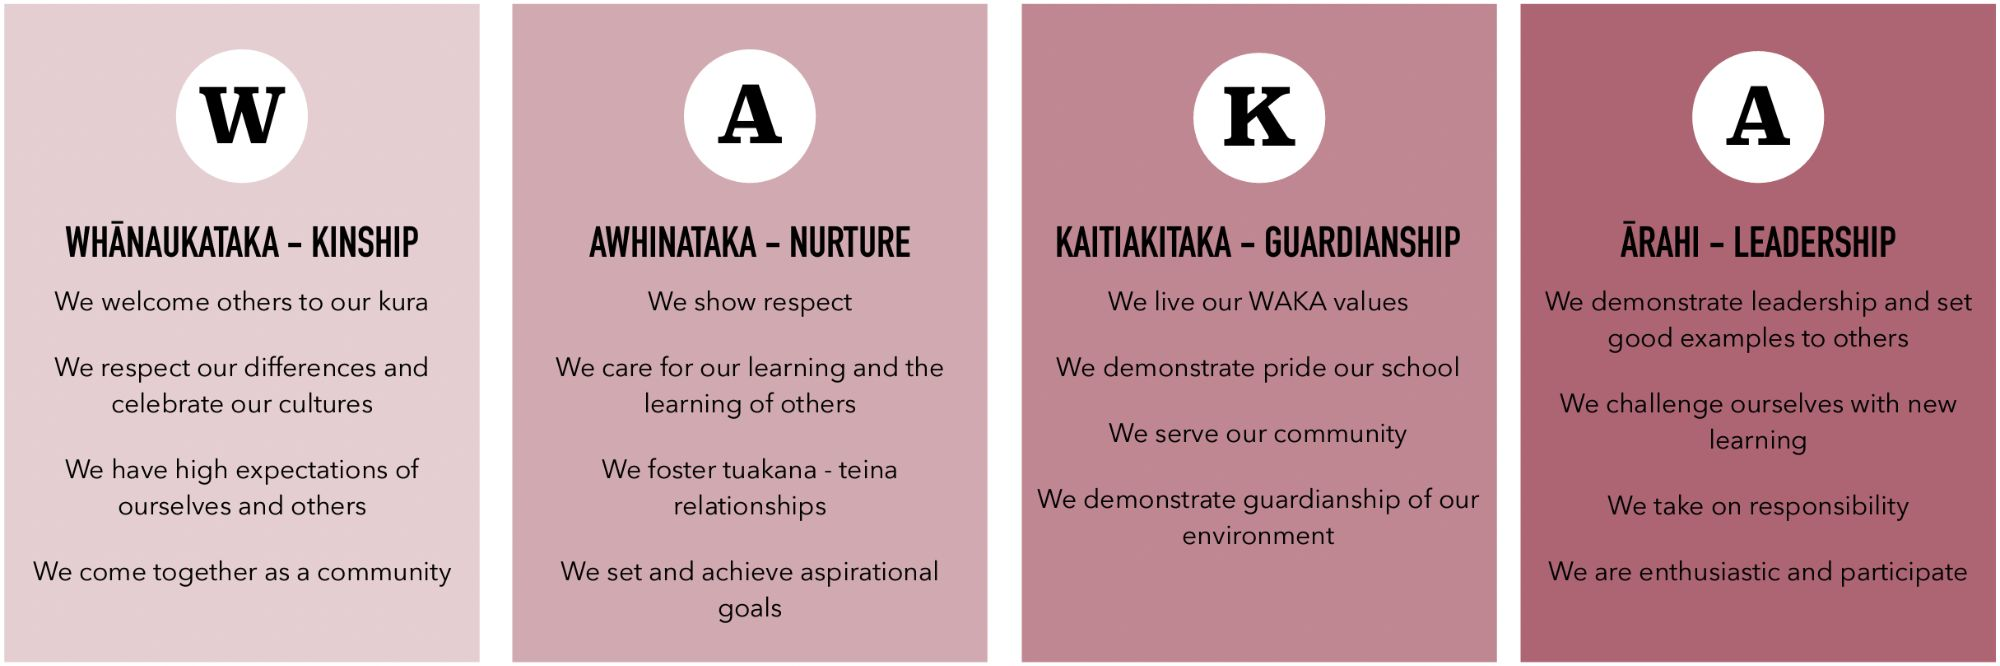 Waka Values